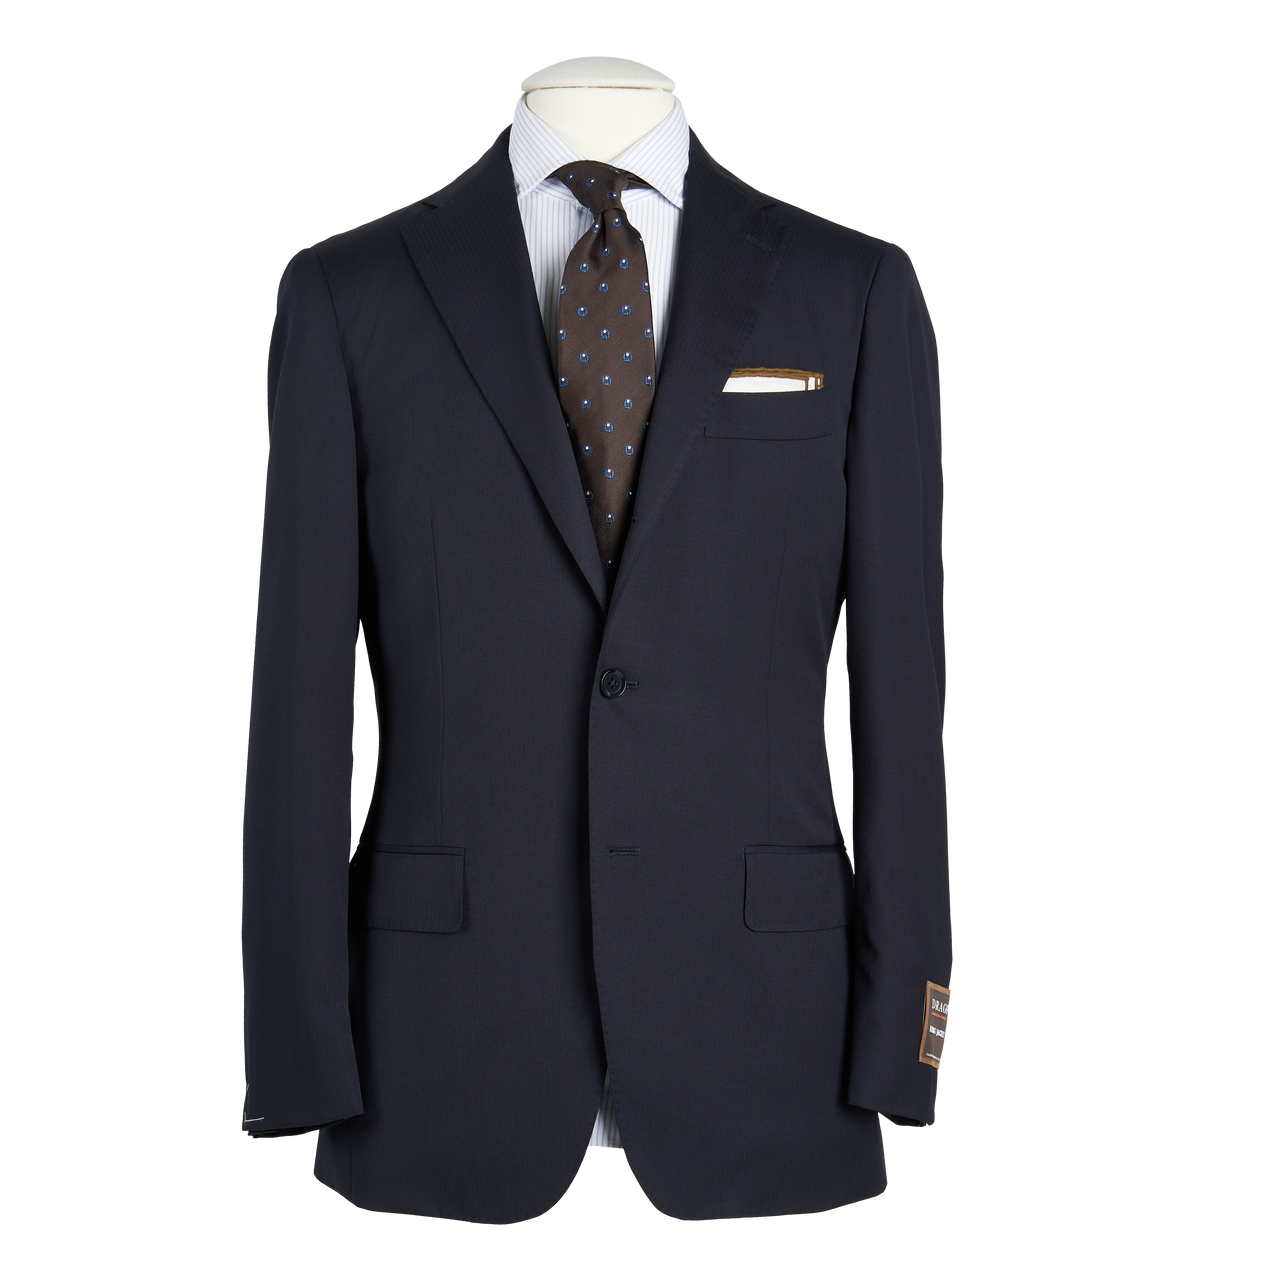 Ring Jacket Suit 184OL-S172 in Navy Herringbone Wool Twill